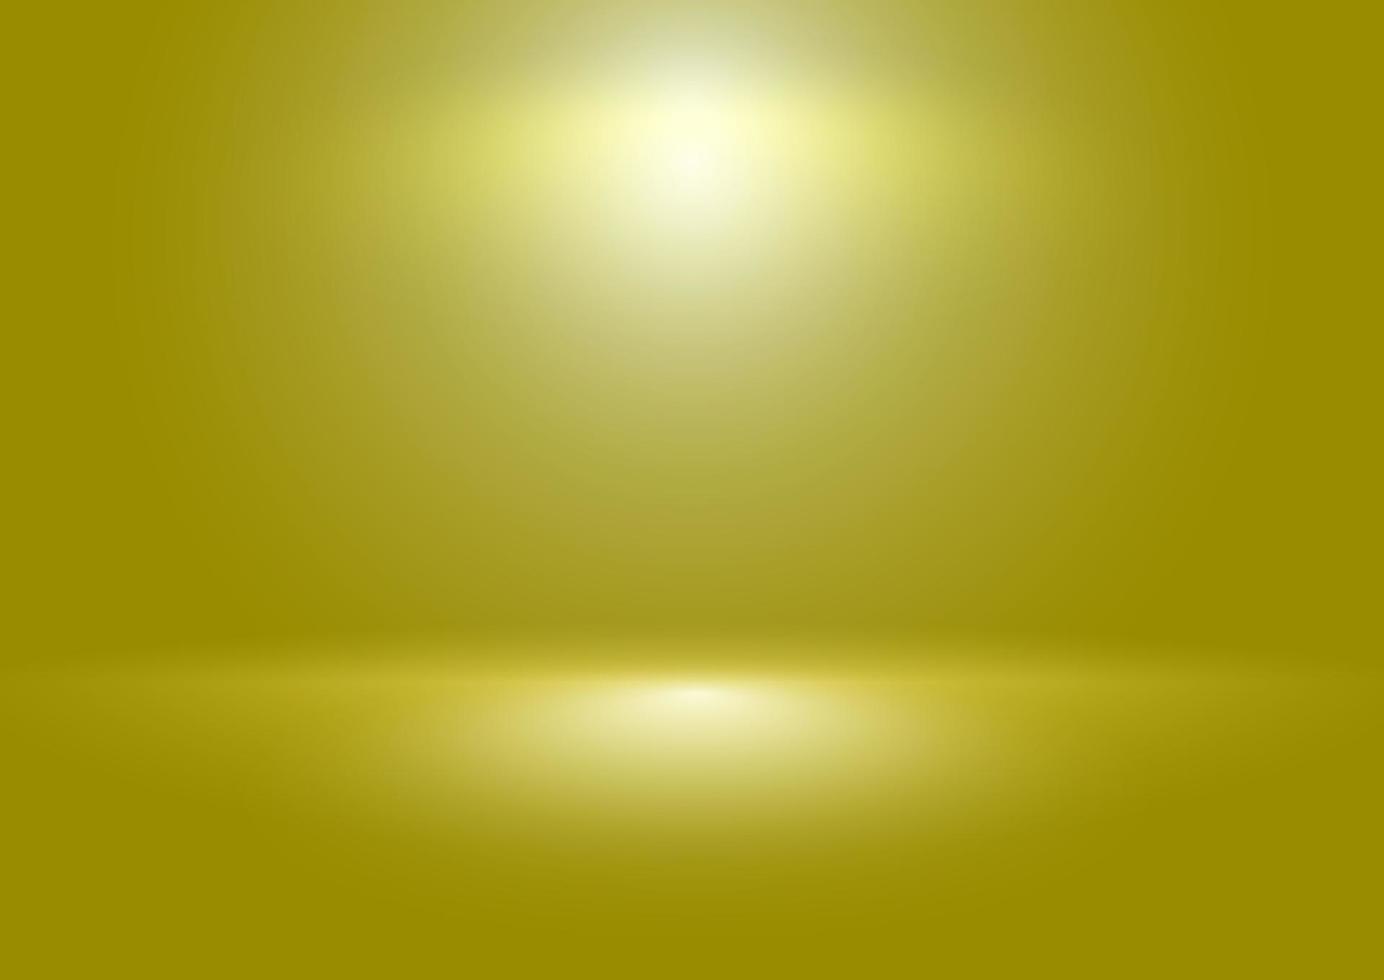 lumière frash abstraite qui brille sur le fond doré avec un dégradé de flou. l'image peut être utilisée comme illustration, image d'arrière-plan publicitaire du produit, modèle, toile de fond et conception du concepteur. vecteur